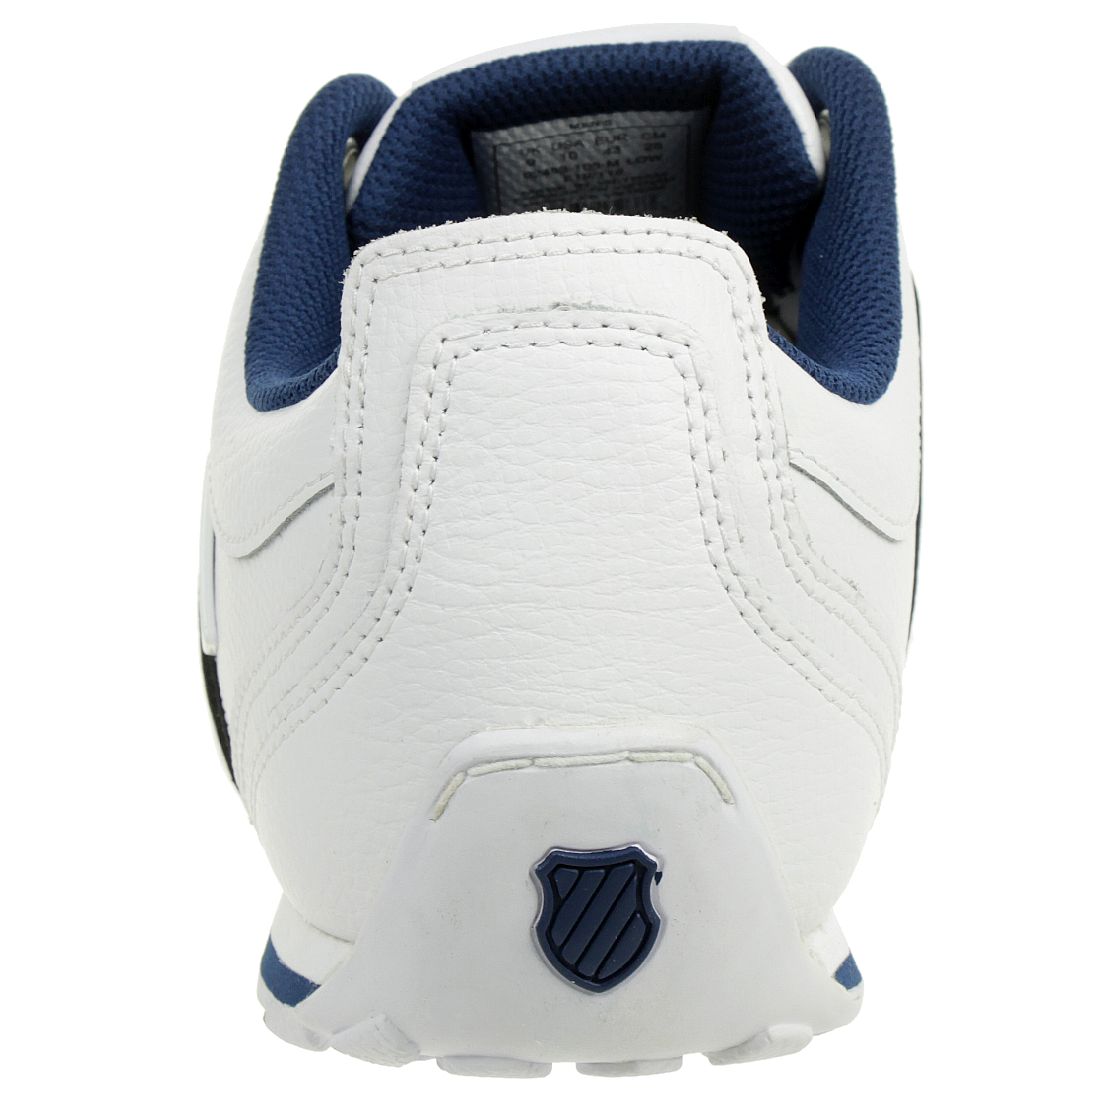 K-SWISS Arvee 1.5 Schuhe Sneaker weiss blau 02453-105-M